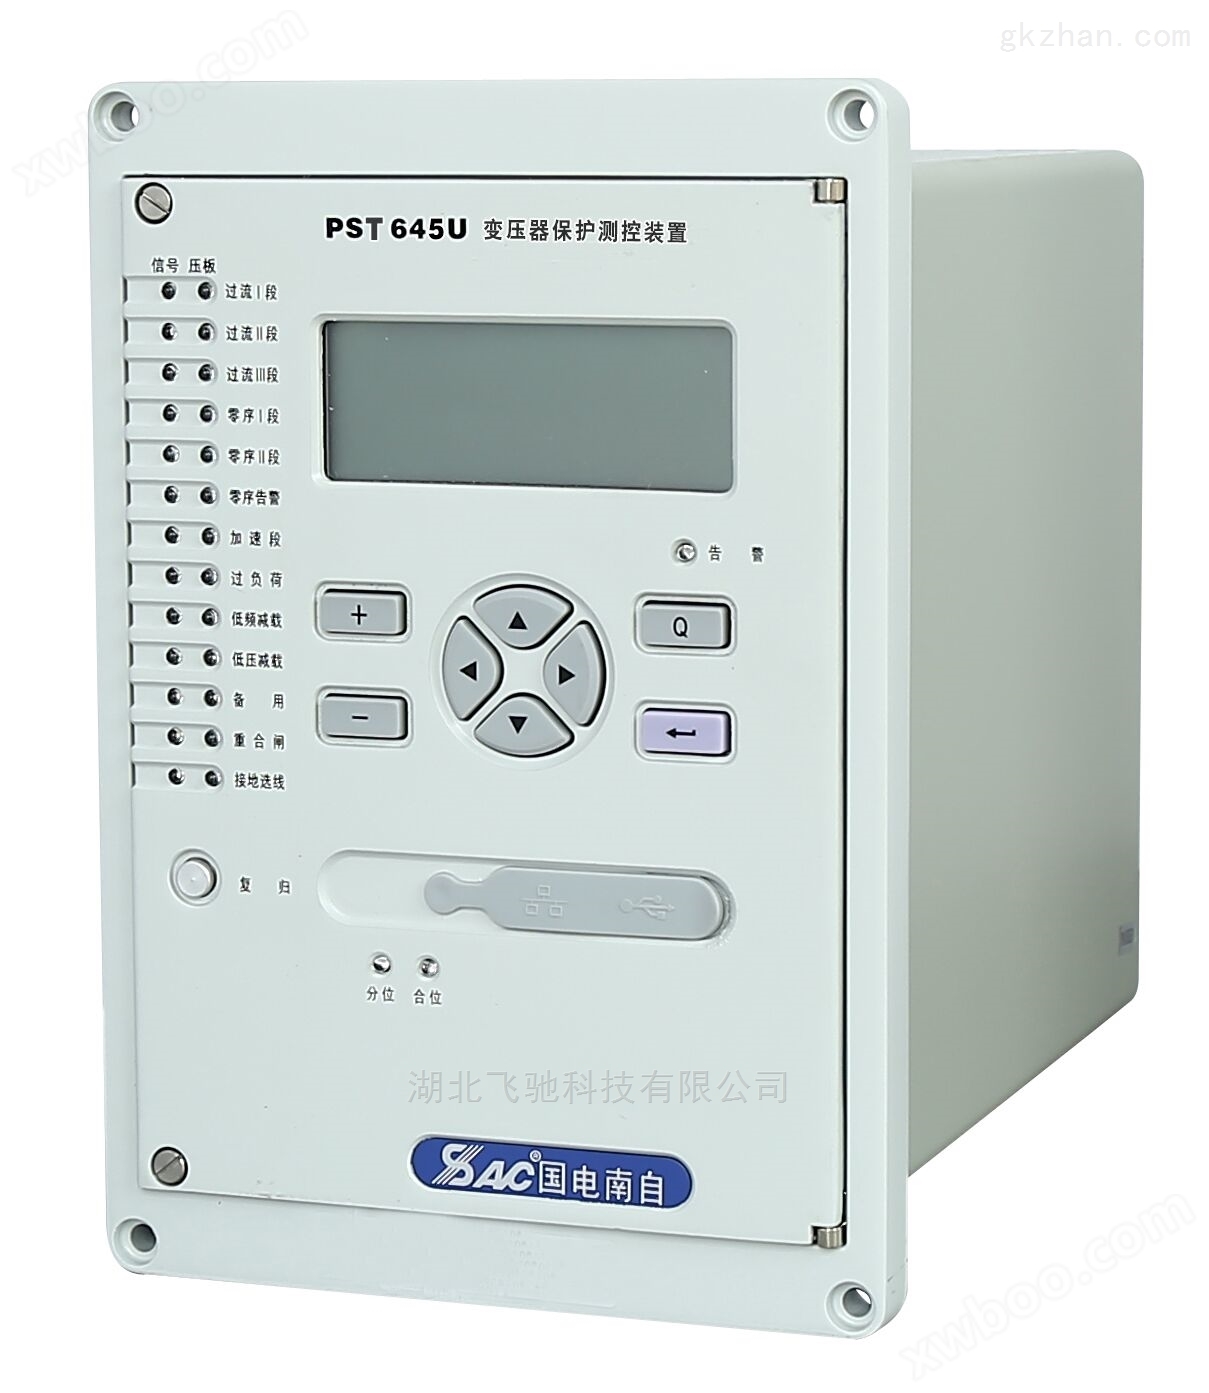 国电南自PST691U变压器差动保护装置